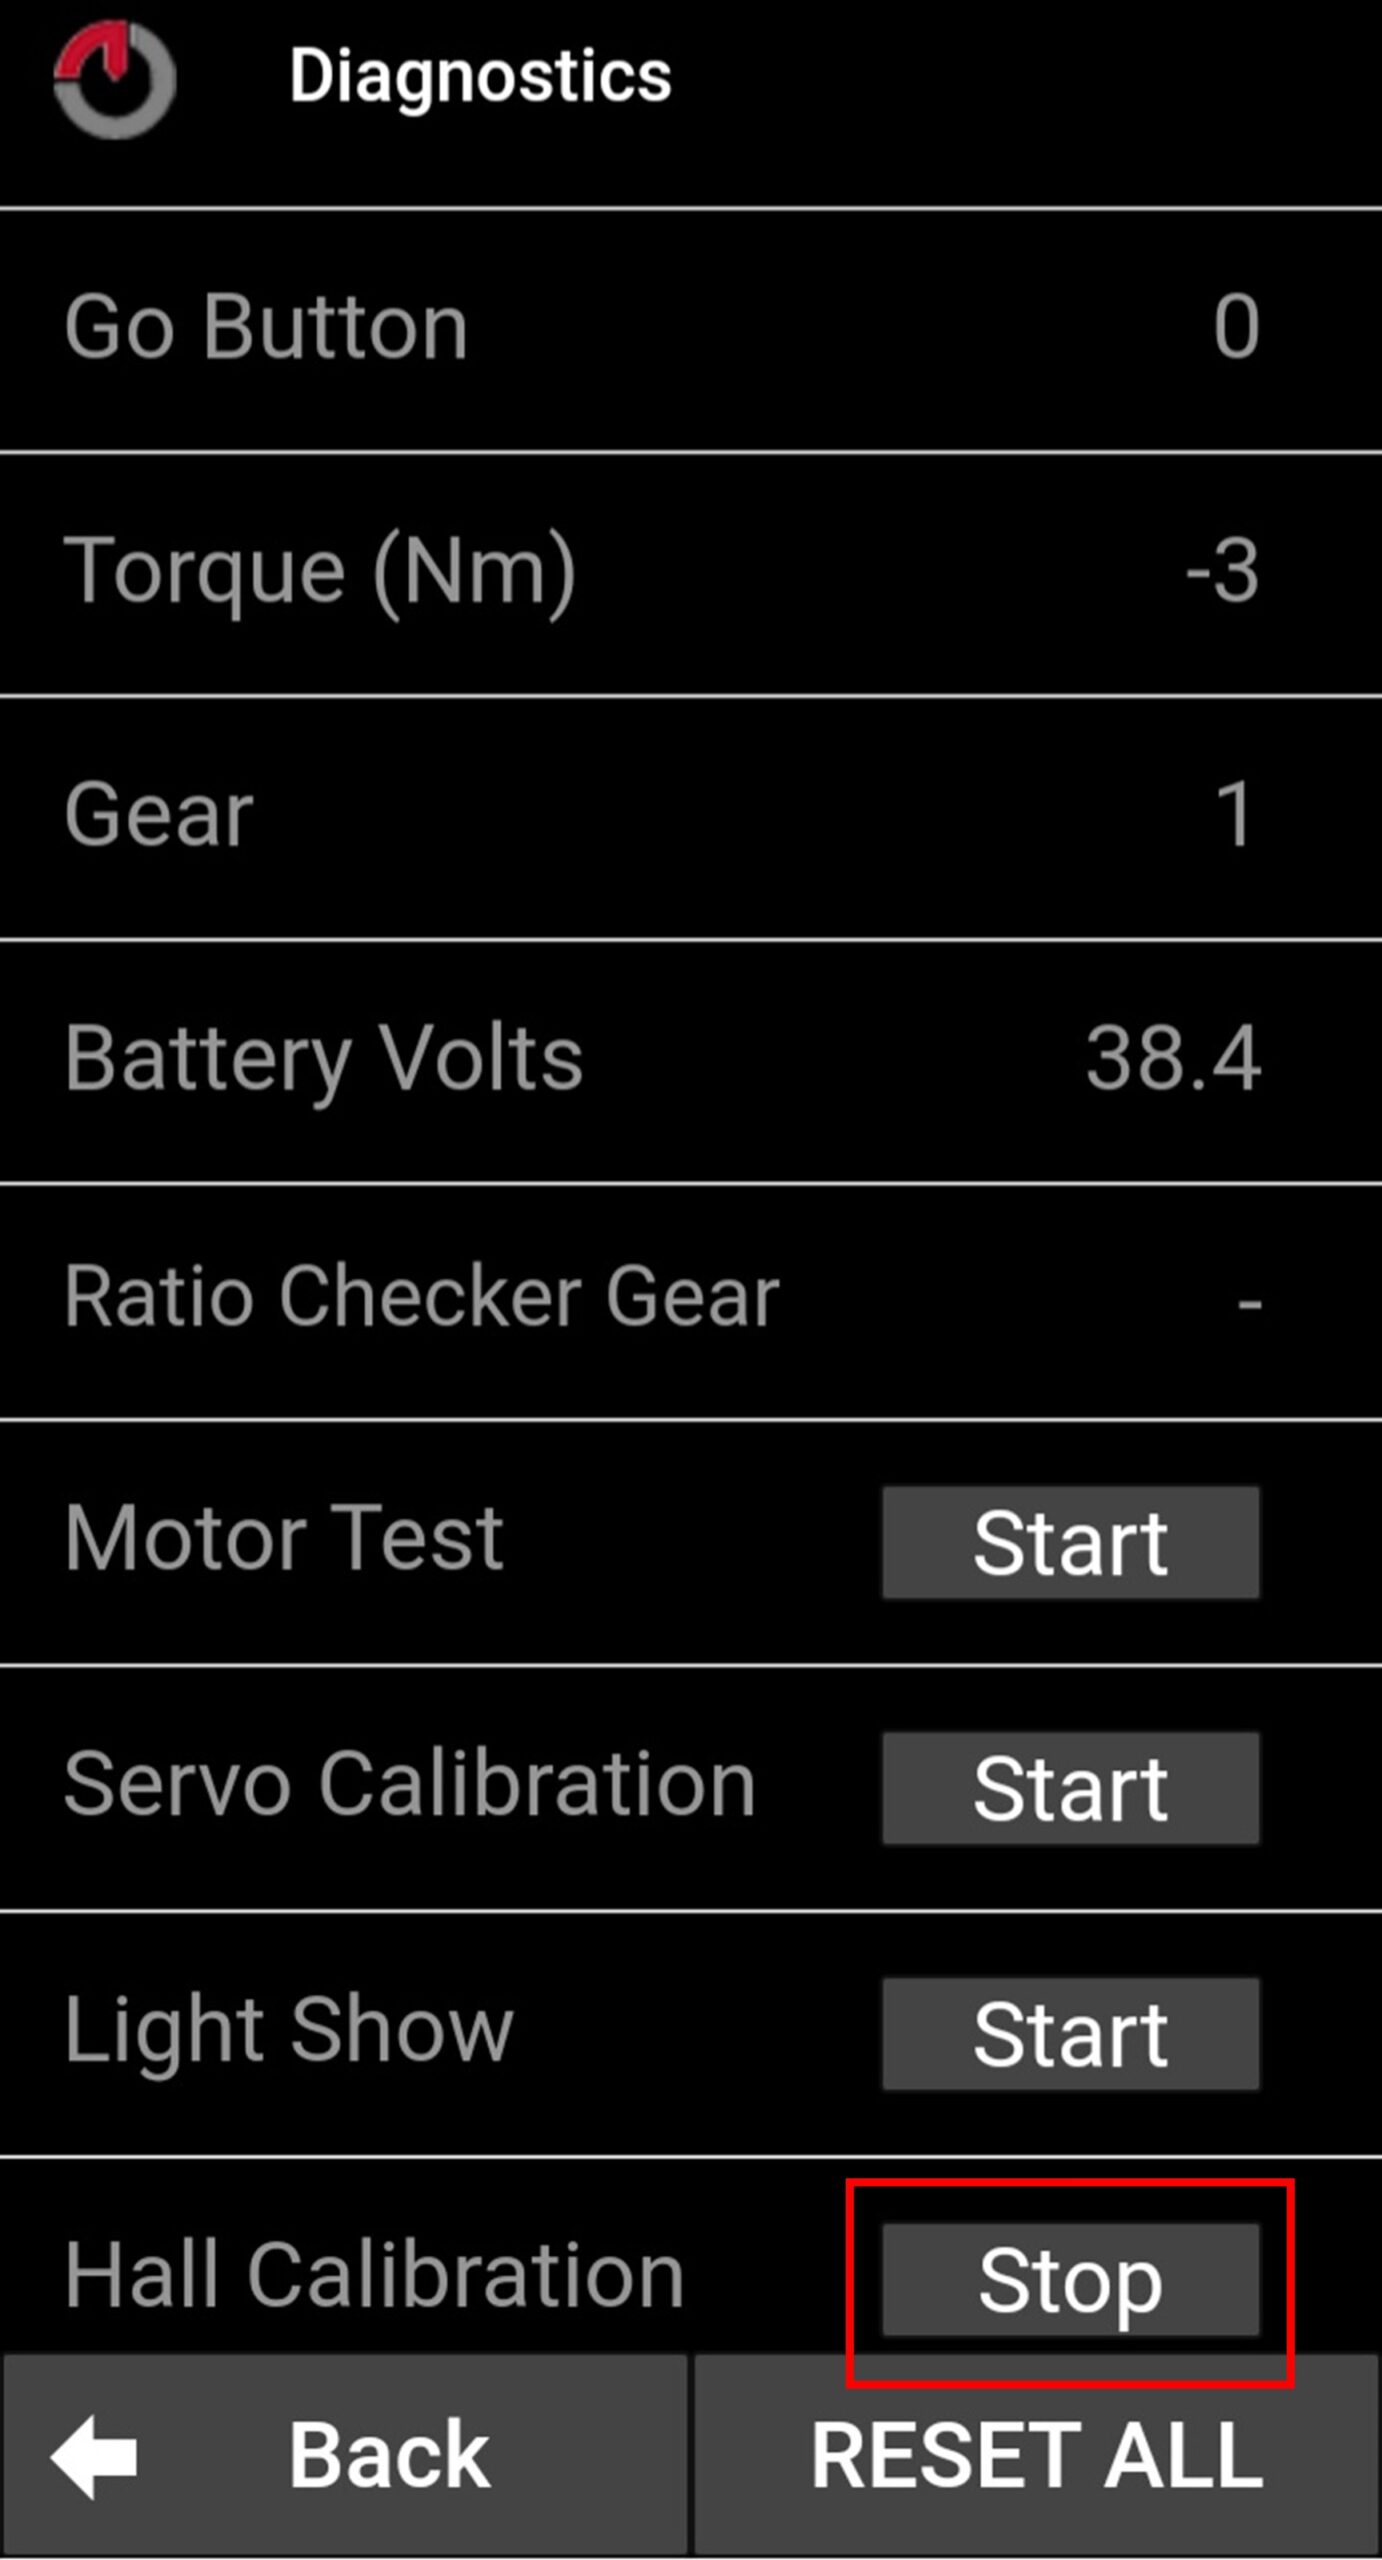 Captura de pantalla de la aplicación móvil de Gocycle donde aparece uno de los pasos que hay que seguir para calibrar el sensor Hall en modelos G4, G4i y G4i+